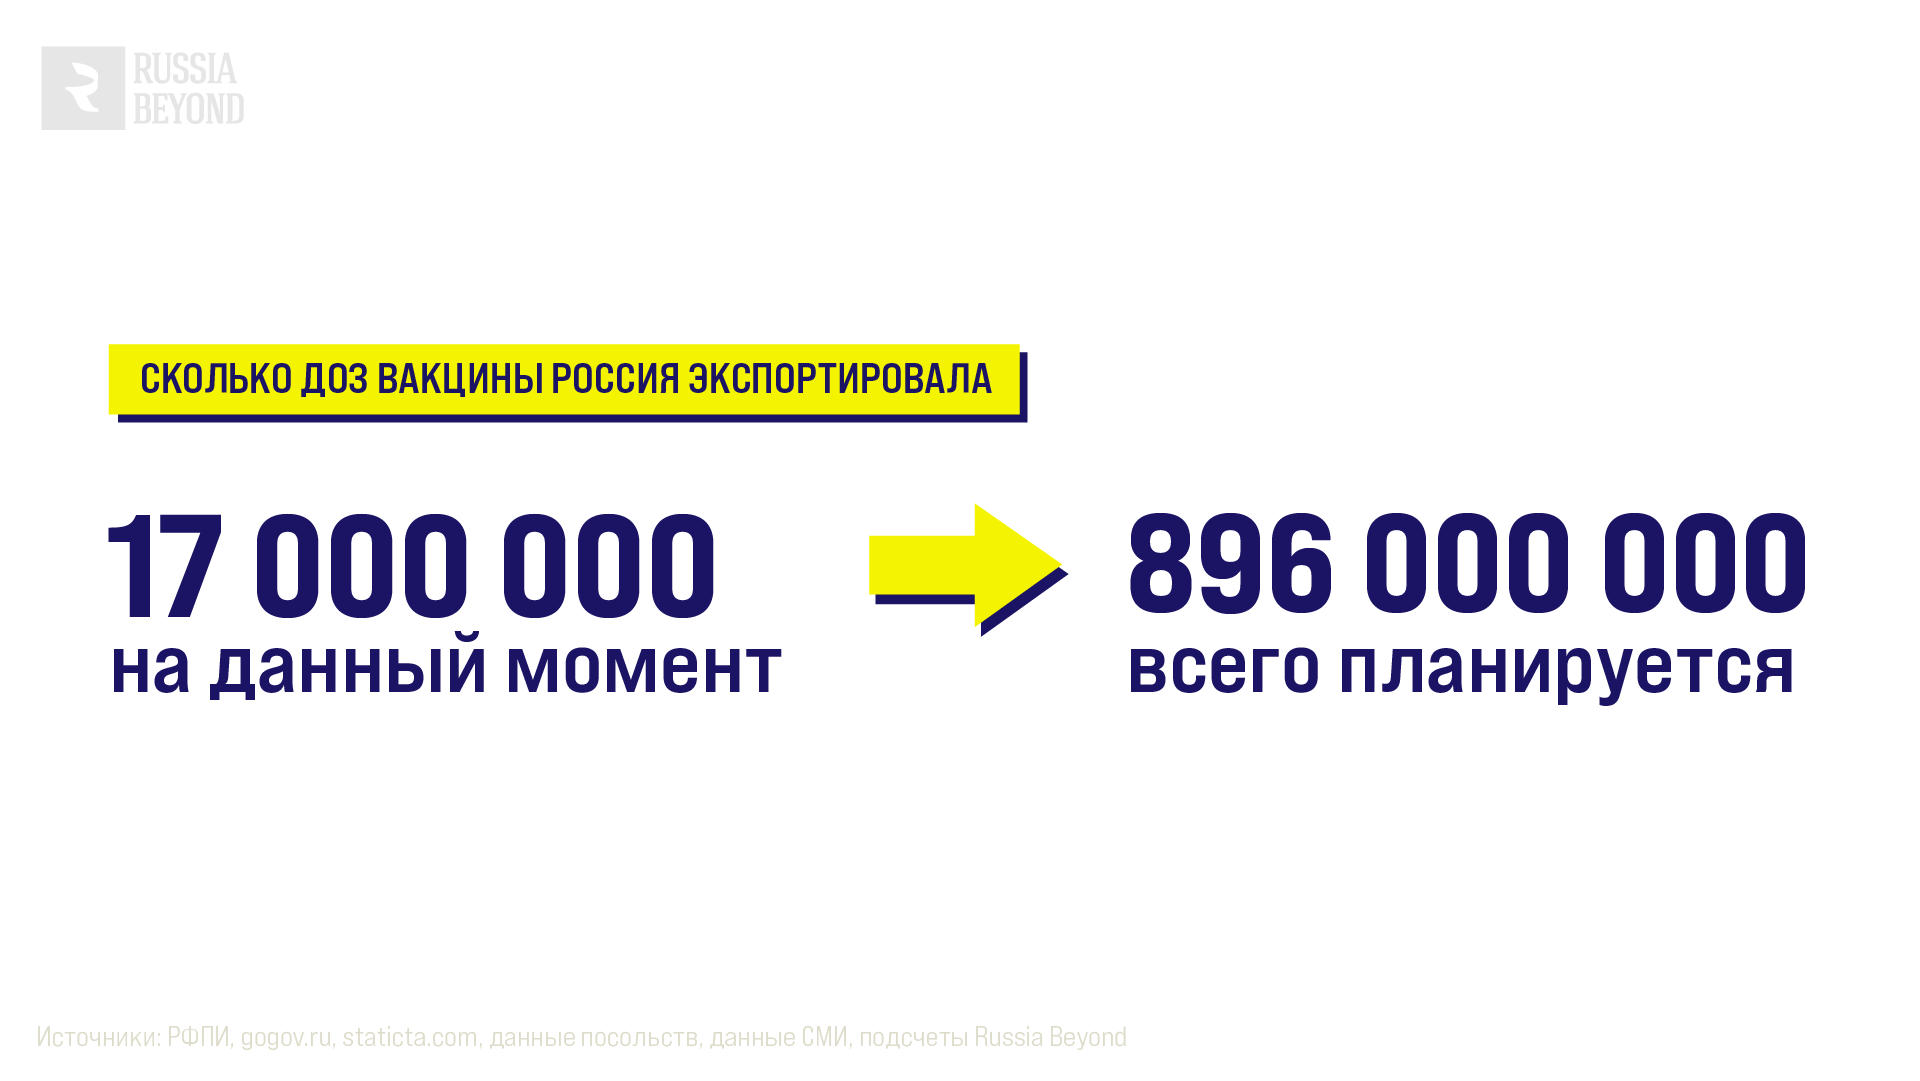 Сколько доз вакцин Россия экспортировала 